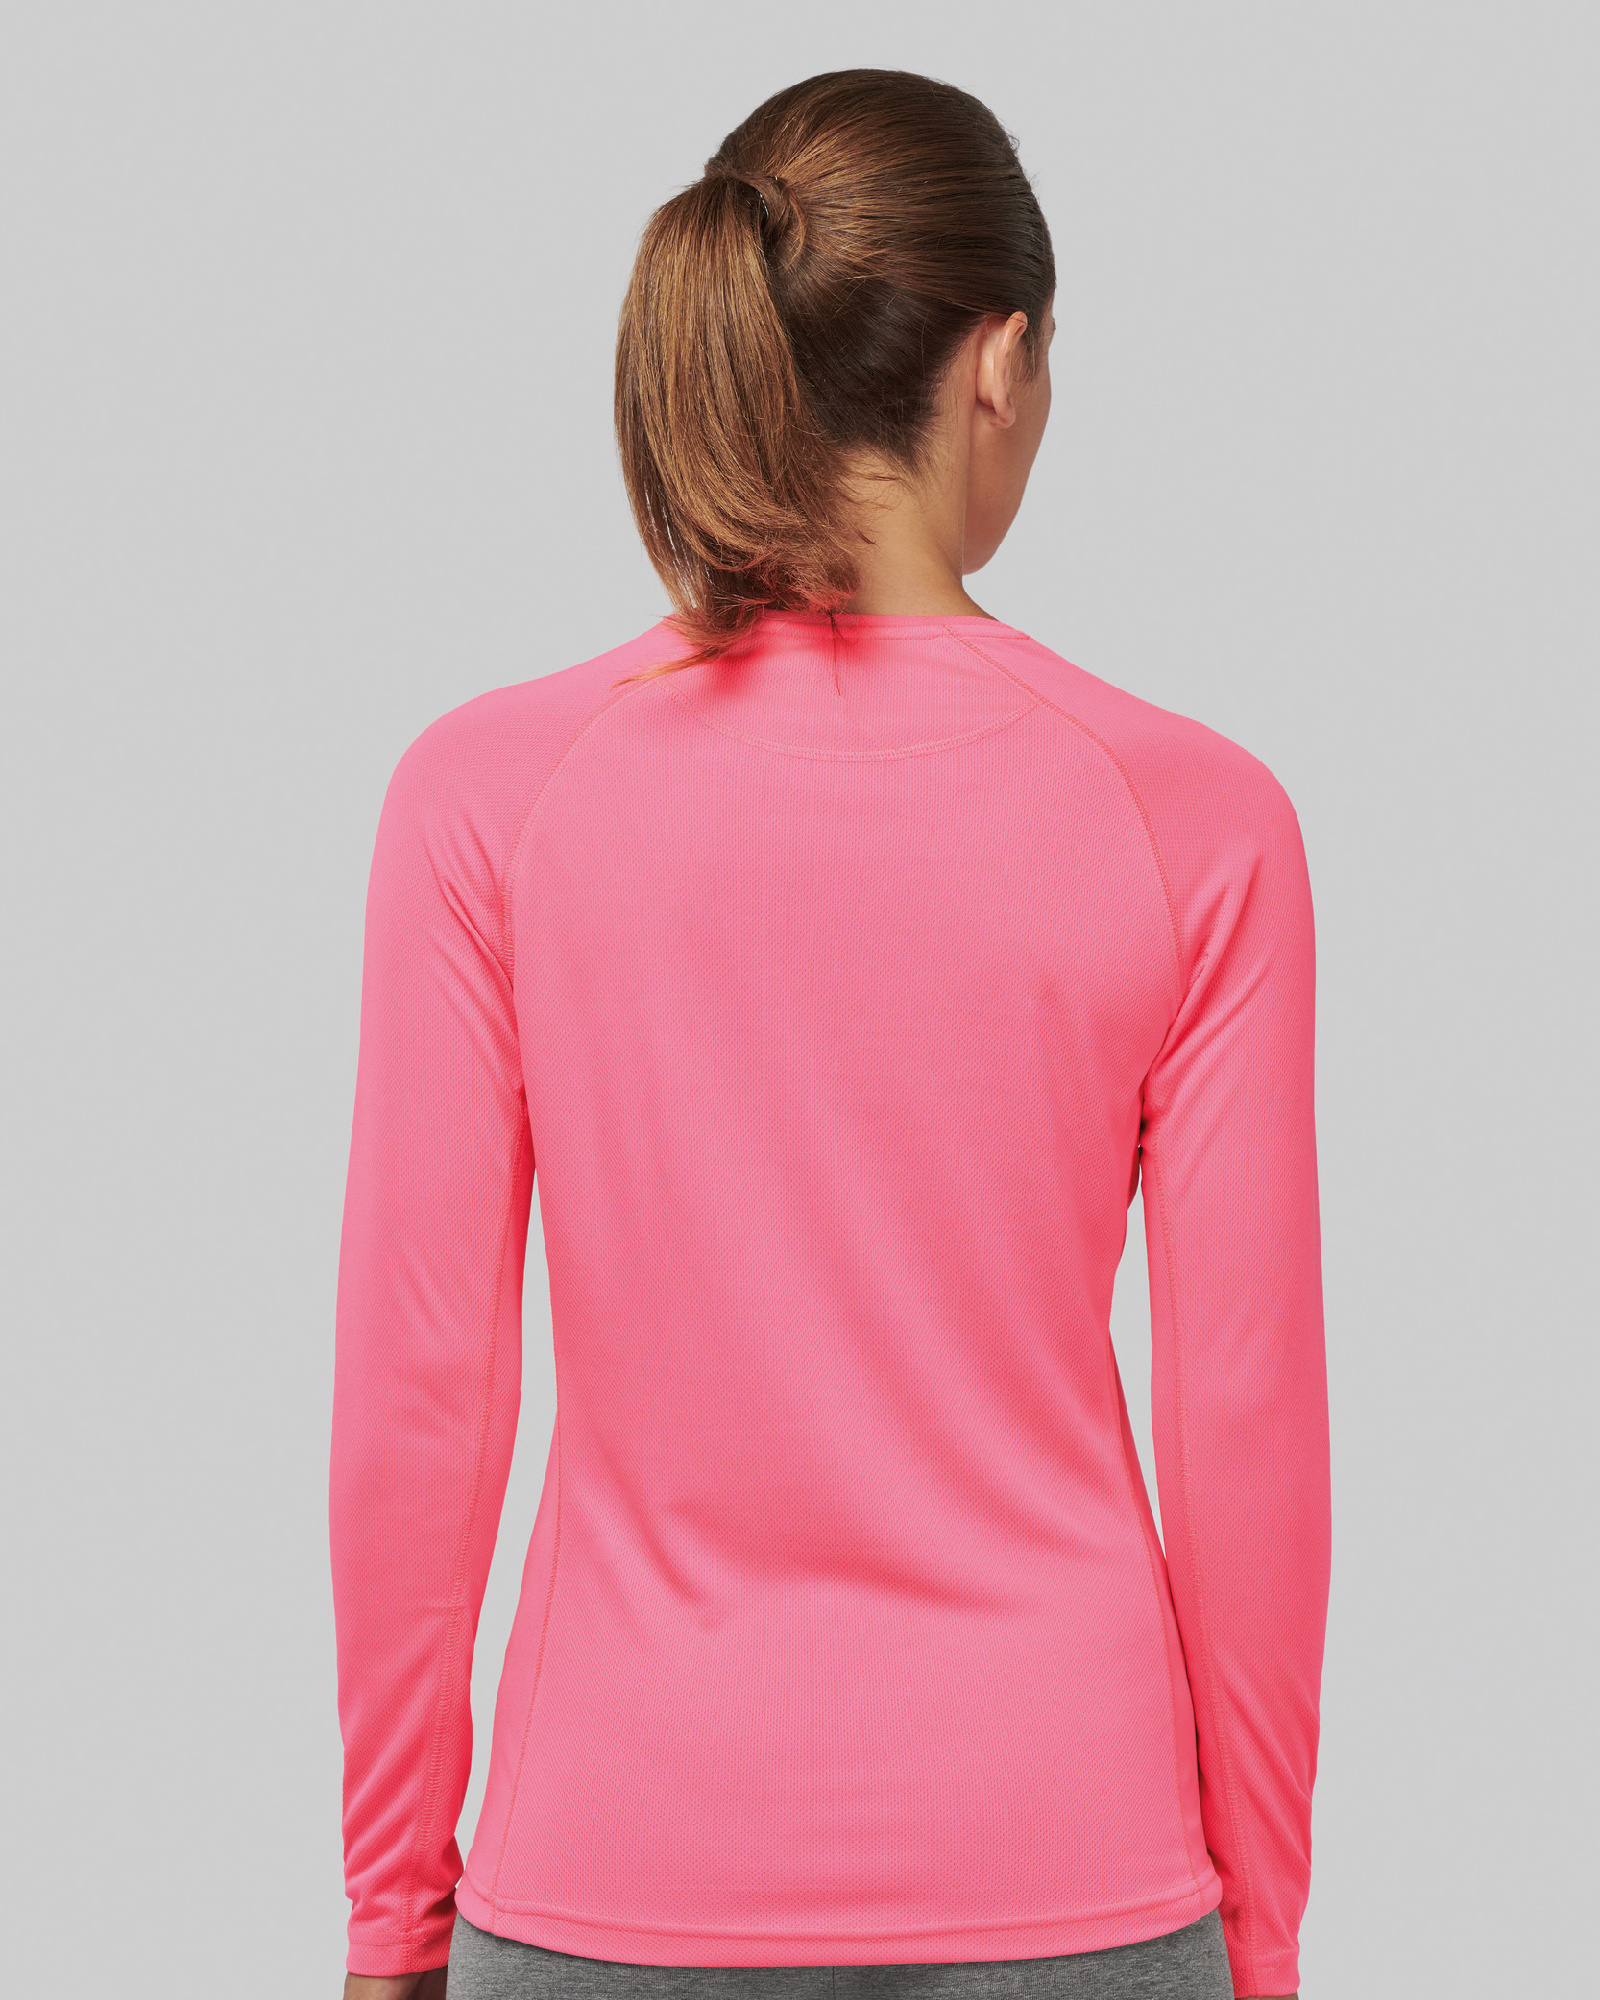 combineren baai Additief Dames sportshirt in 7 trendy kleuren